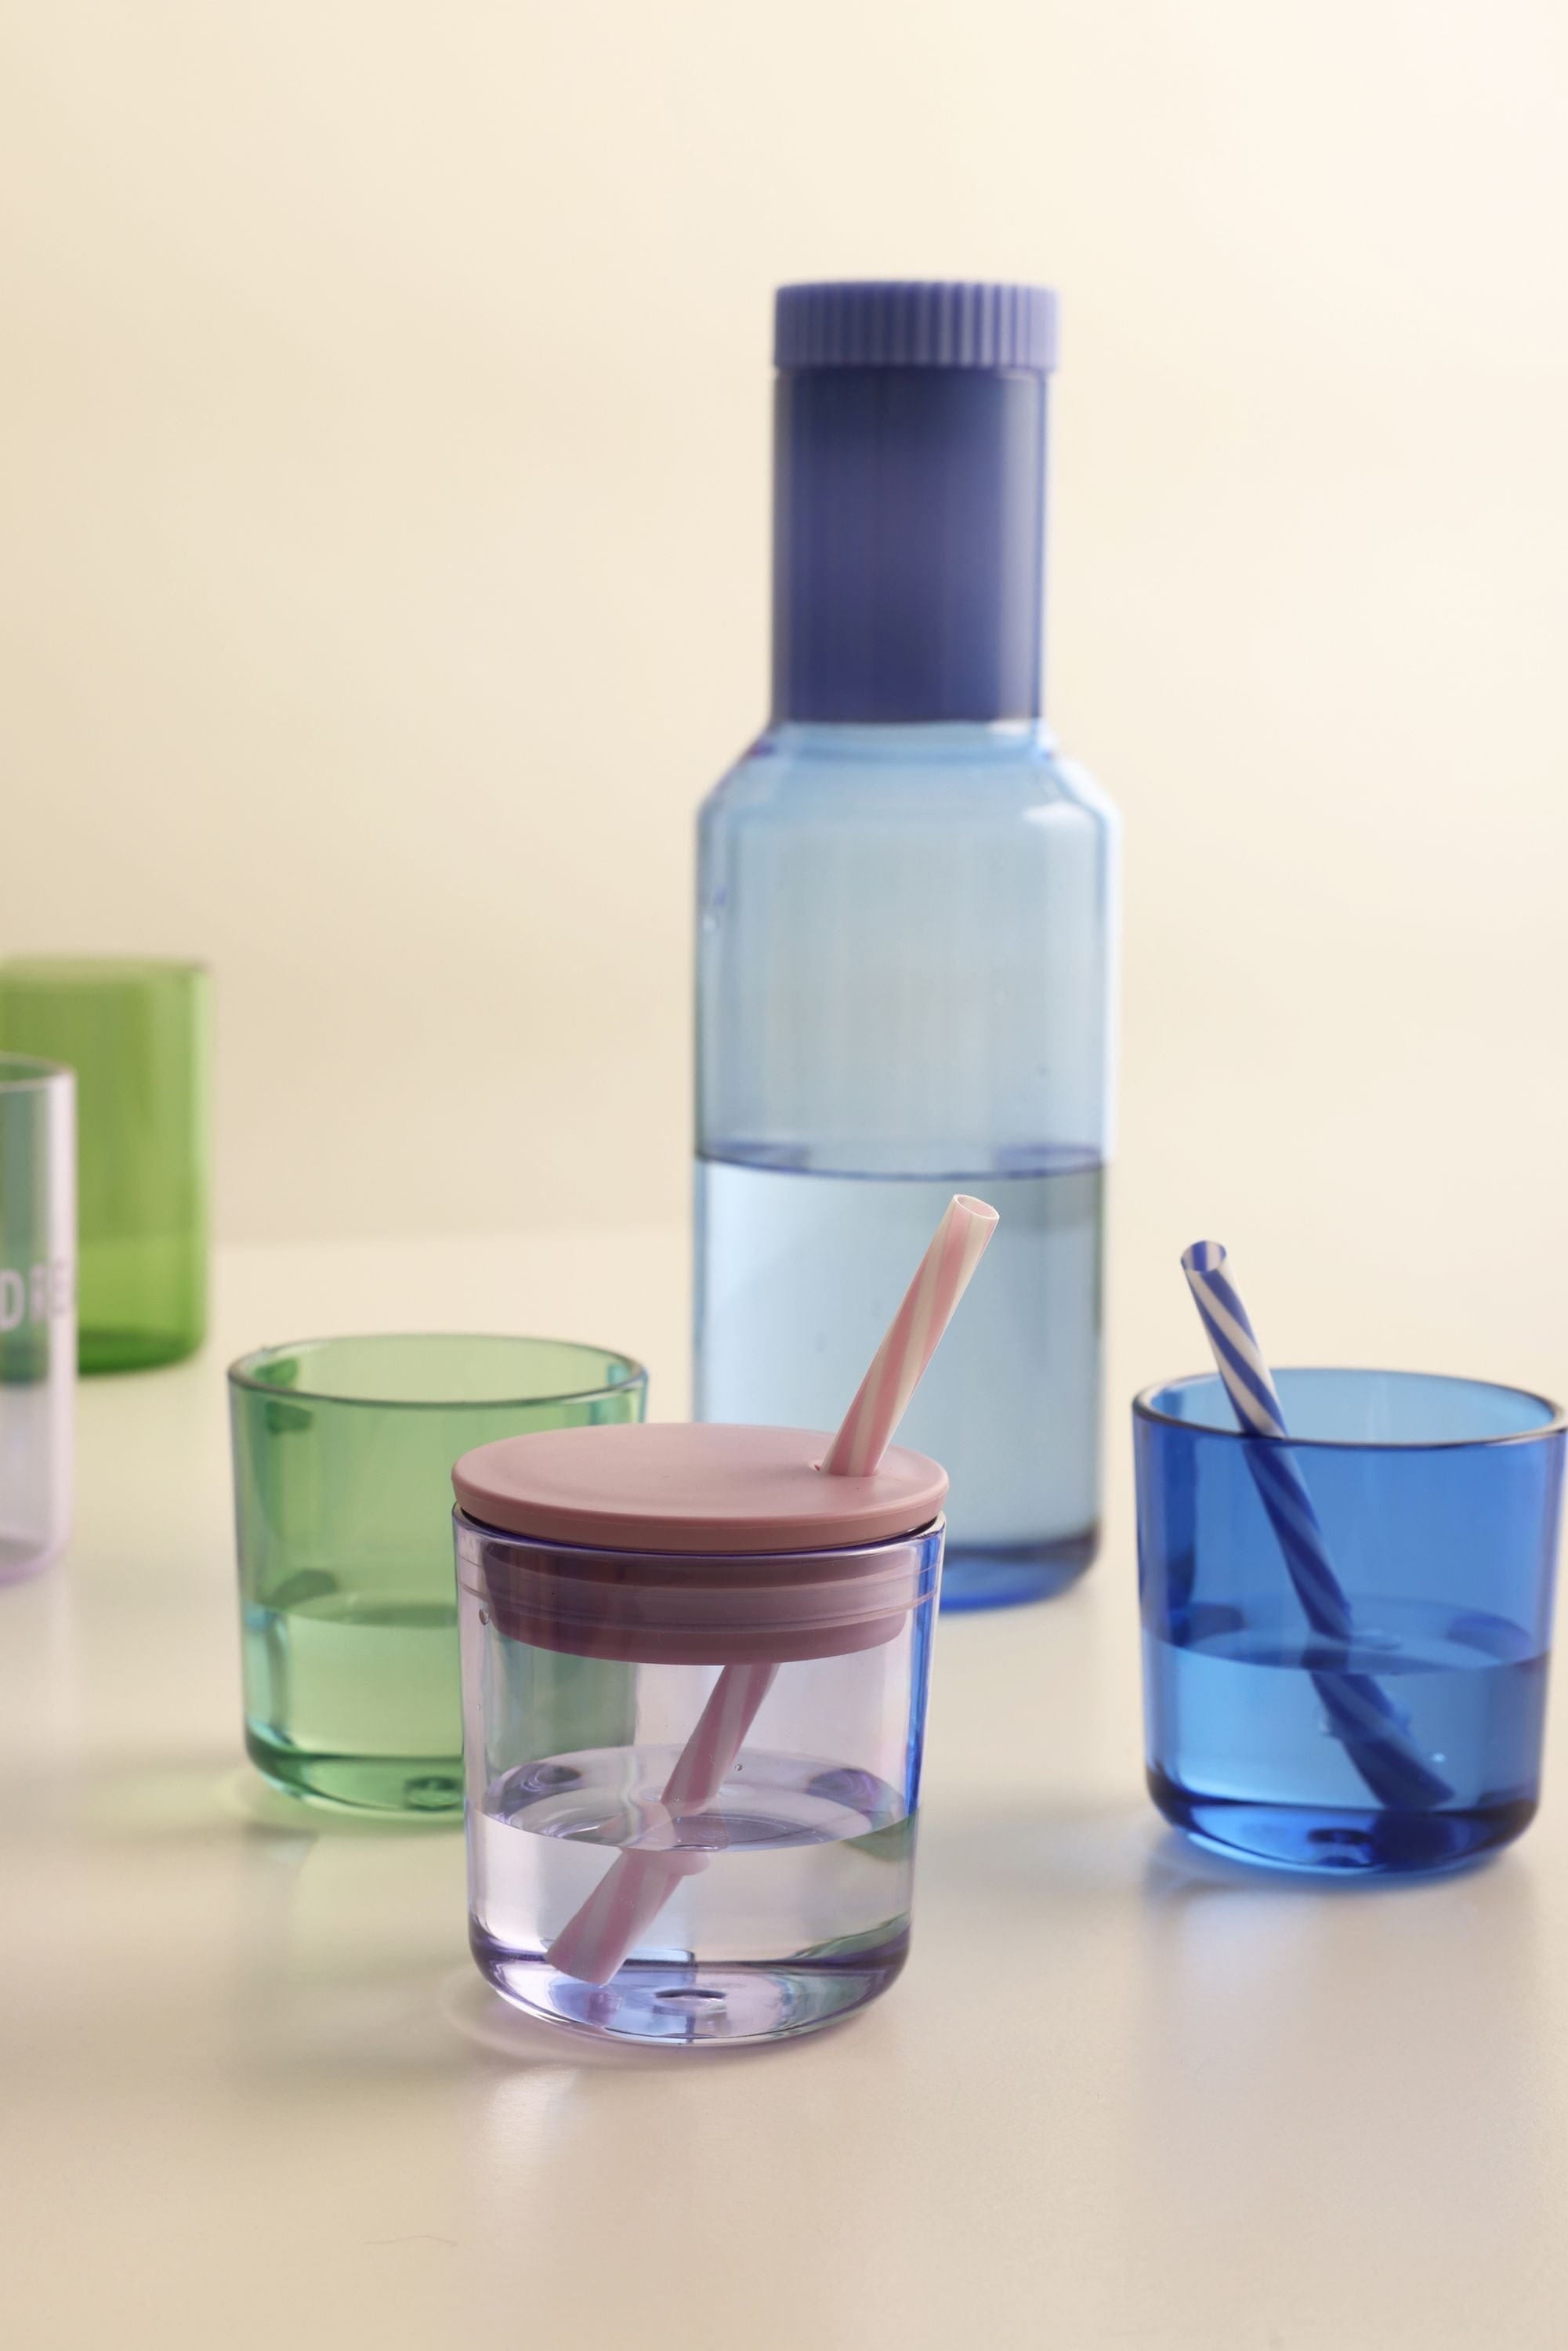 Konstrukční dopisy slámy víčka pro ekologické šálky a pití brýlí, fialová